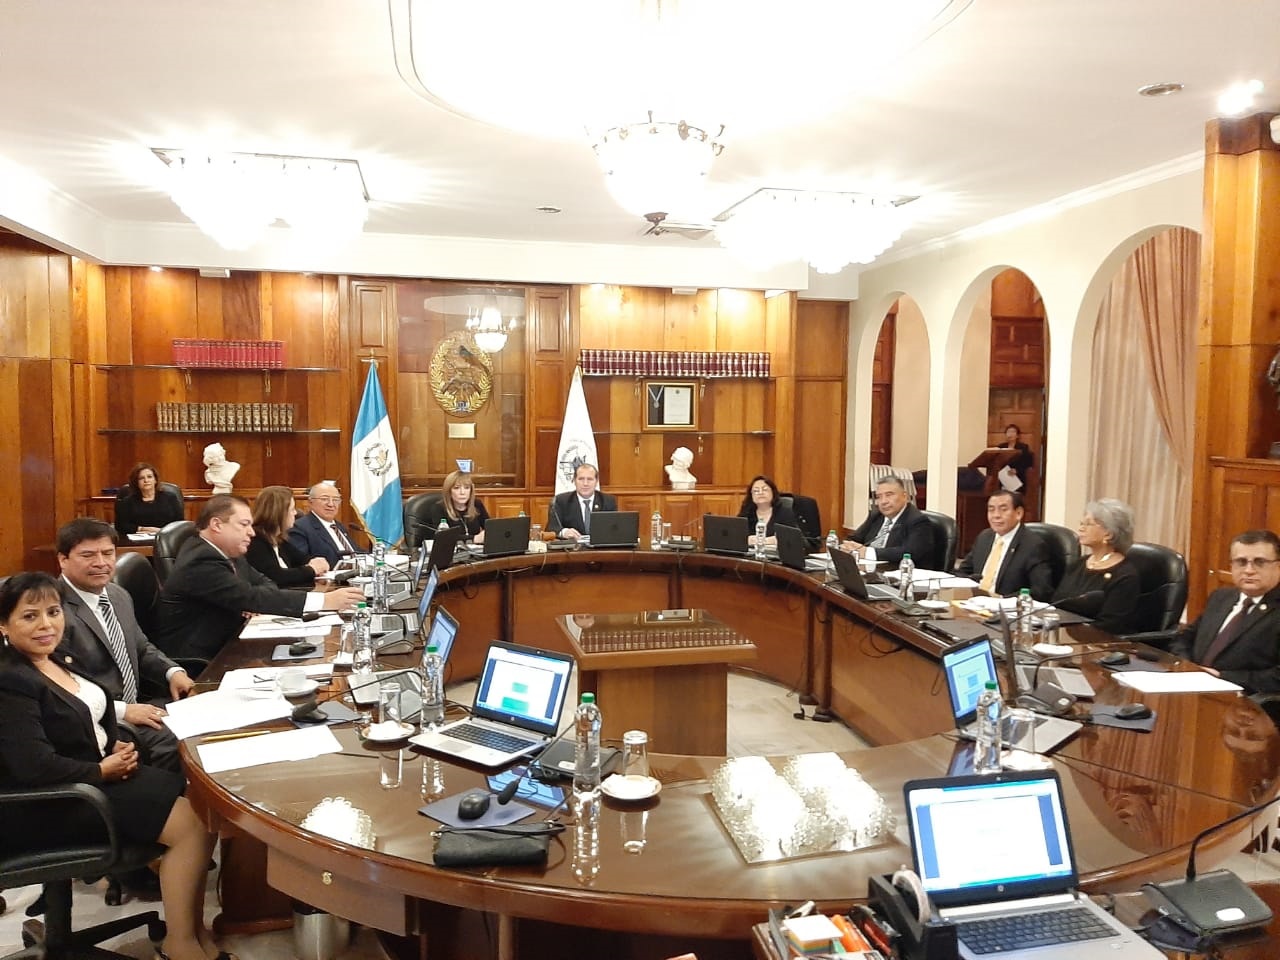 Los 13 magistrados de la CSJ se reunieron en sesión extraordinaria para finalizar su periodo ordinario de funciones. (Foto Prensa Libre: Andrea Domínguez)